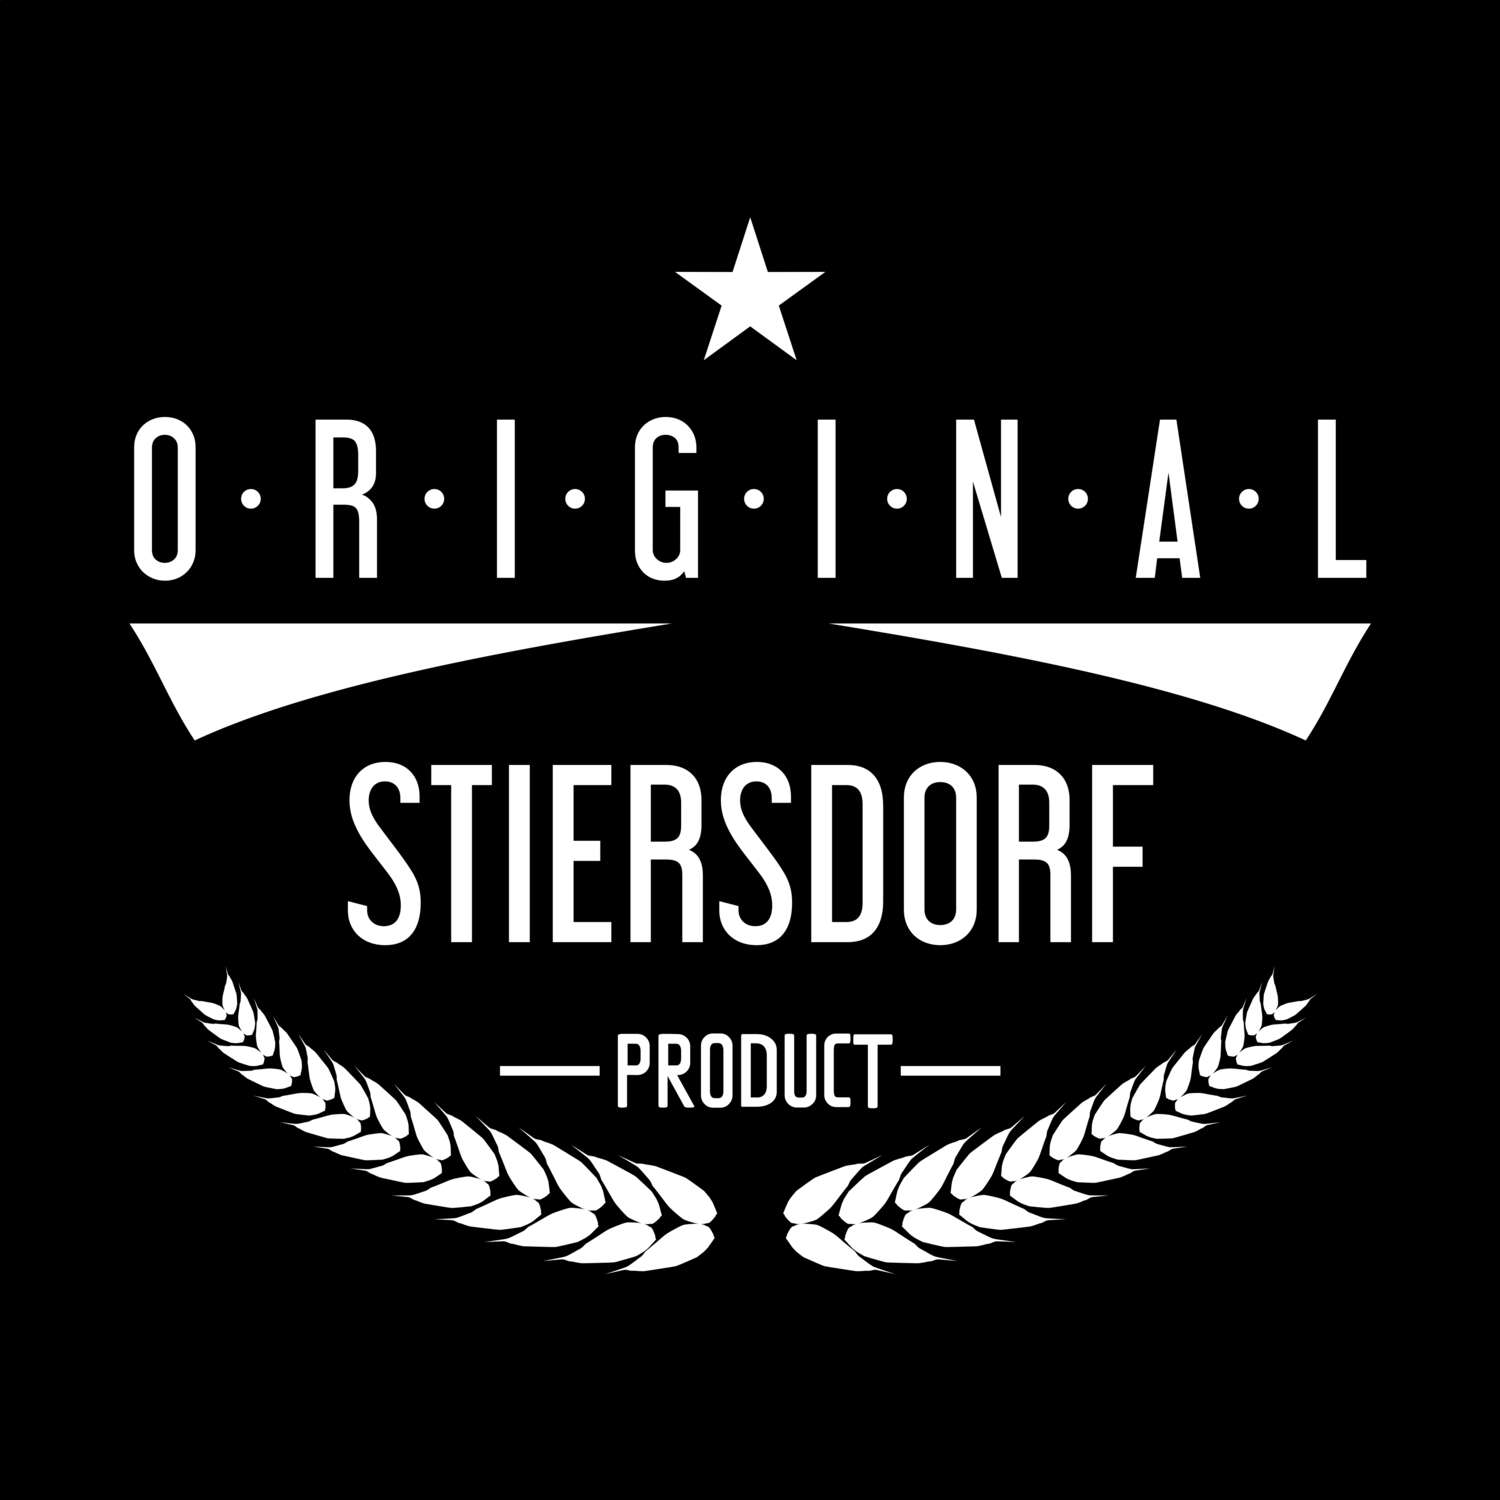 Stiersdorf T-Shirt »Original Product«